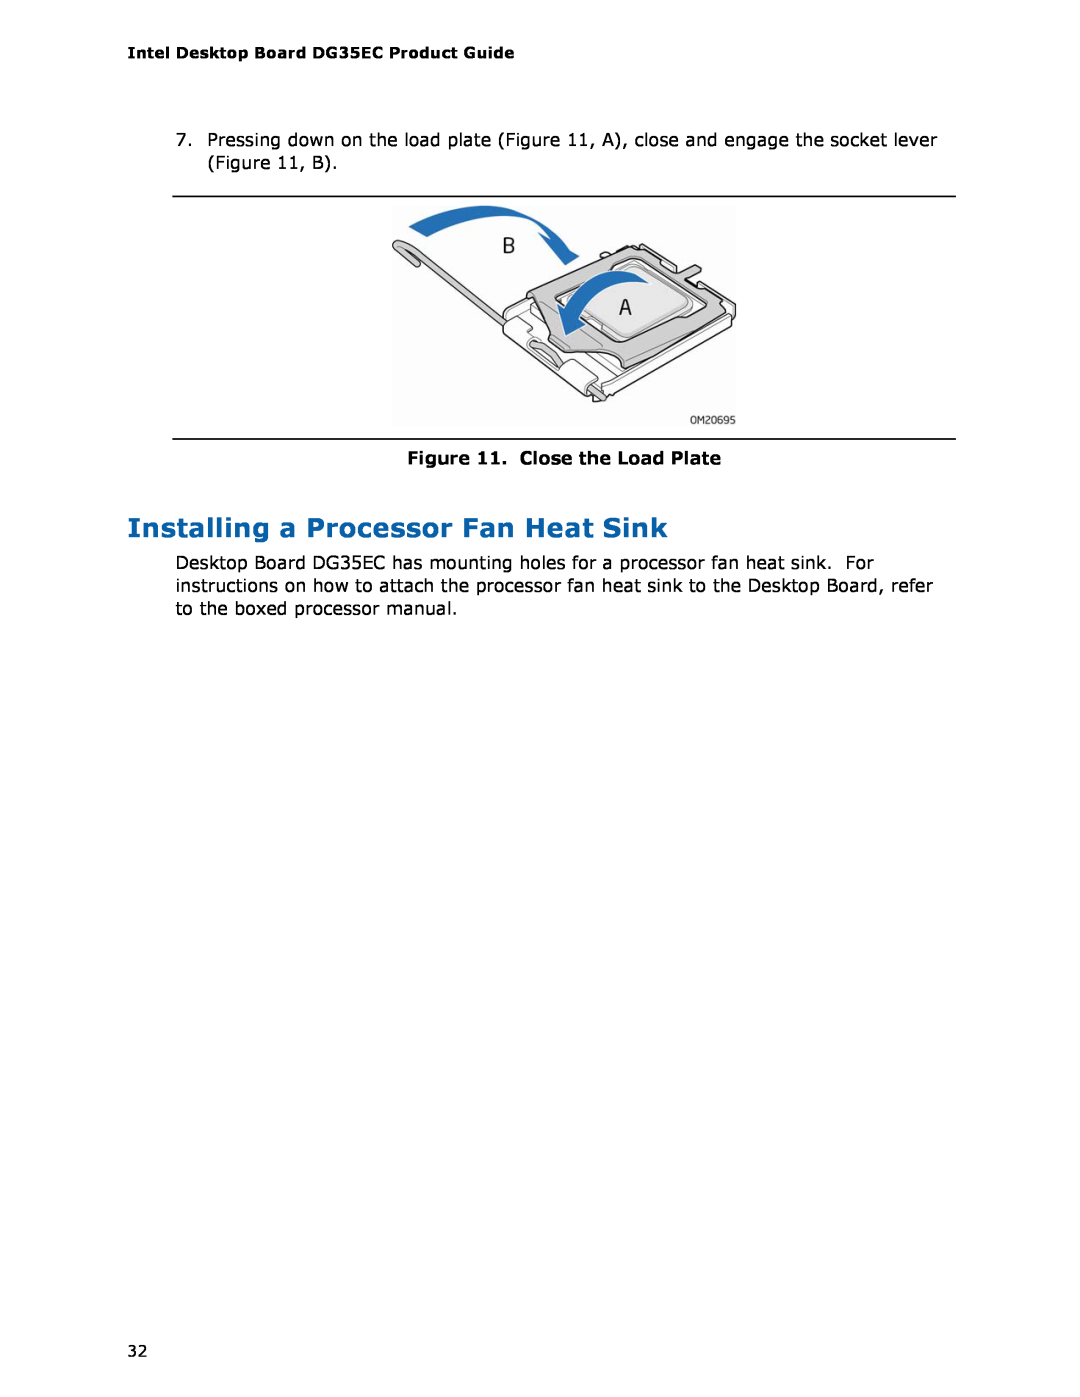 Intel Intel Desktop Board, DG35EC manual Installing a Processor Fan Heat Sink, Close the Load Plate 